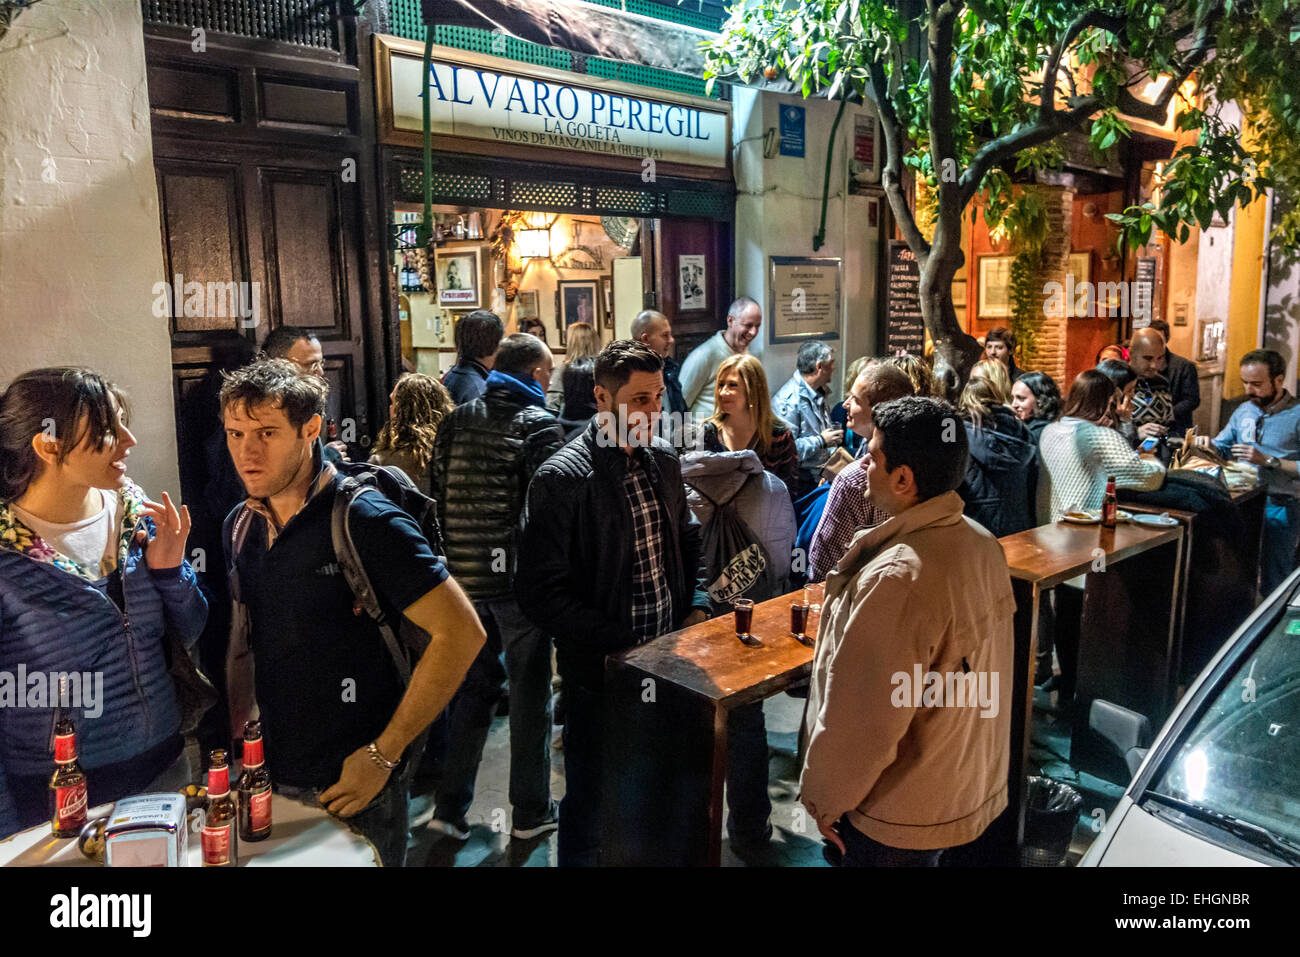 Il ristorante di tapas bar Alvaro Peregil in Sevilla, Sevilla, Spagna con una folla hipster permanente al tavoli all'esterno. Aka La Goleta Foto Stock